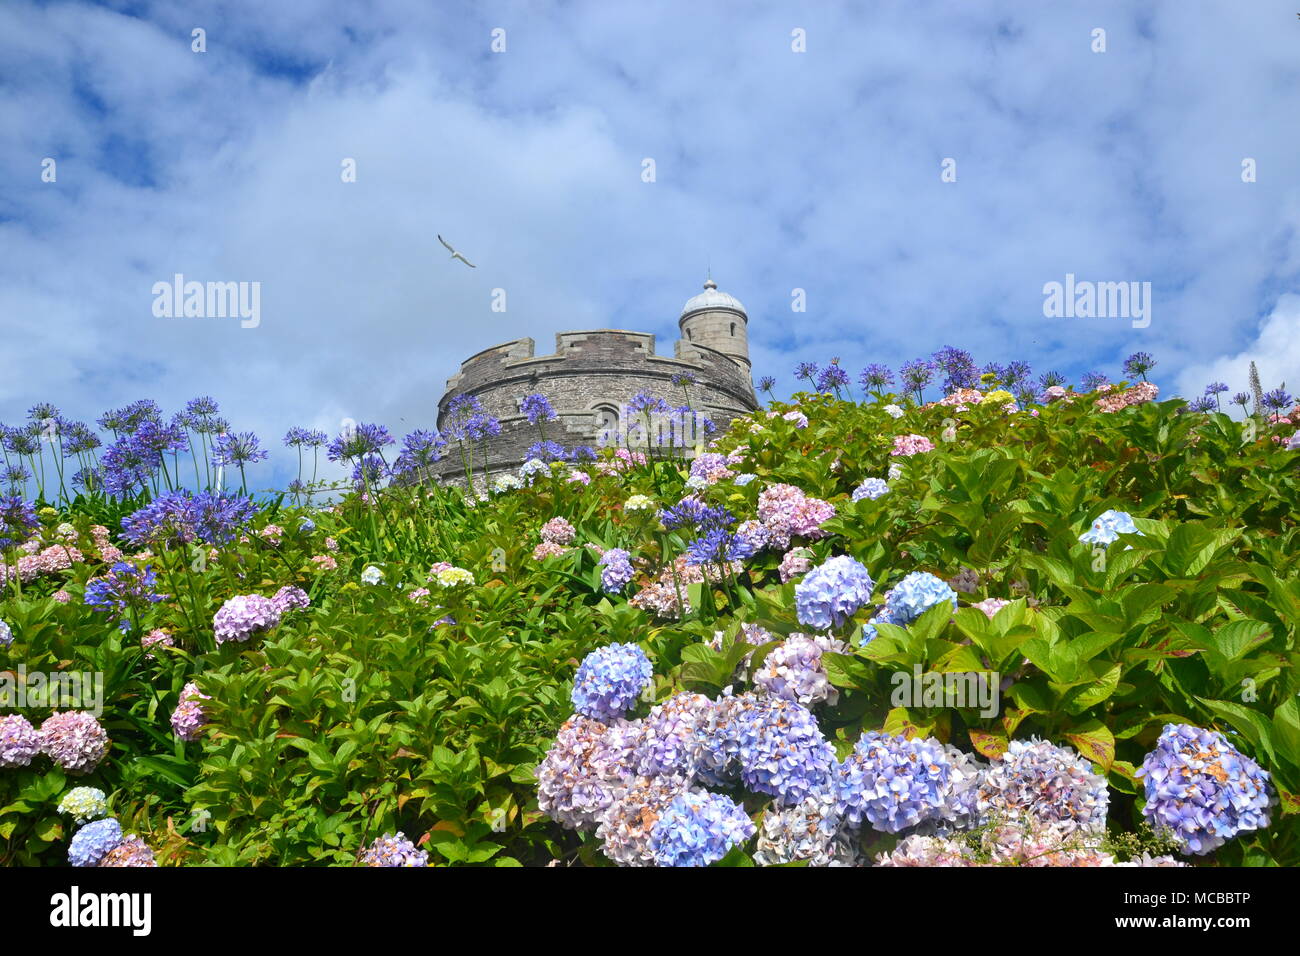 St Mawes Castle, Cornwall, England, UK Stock Photo